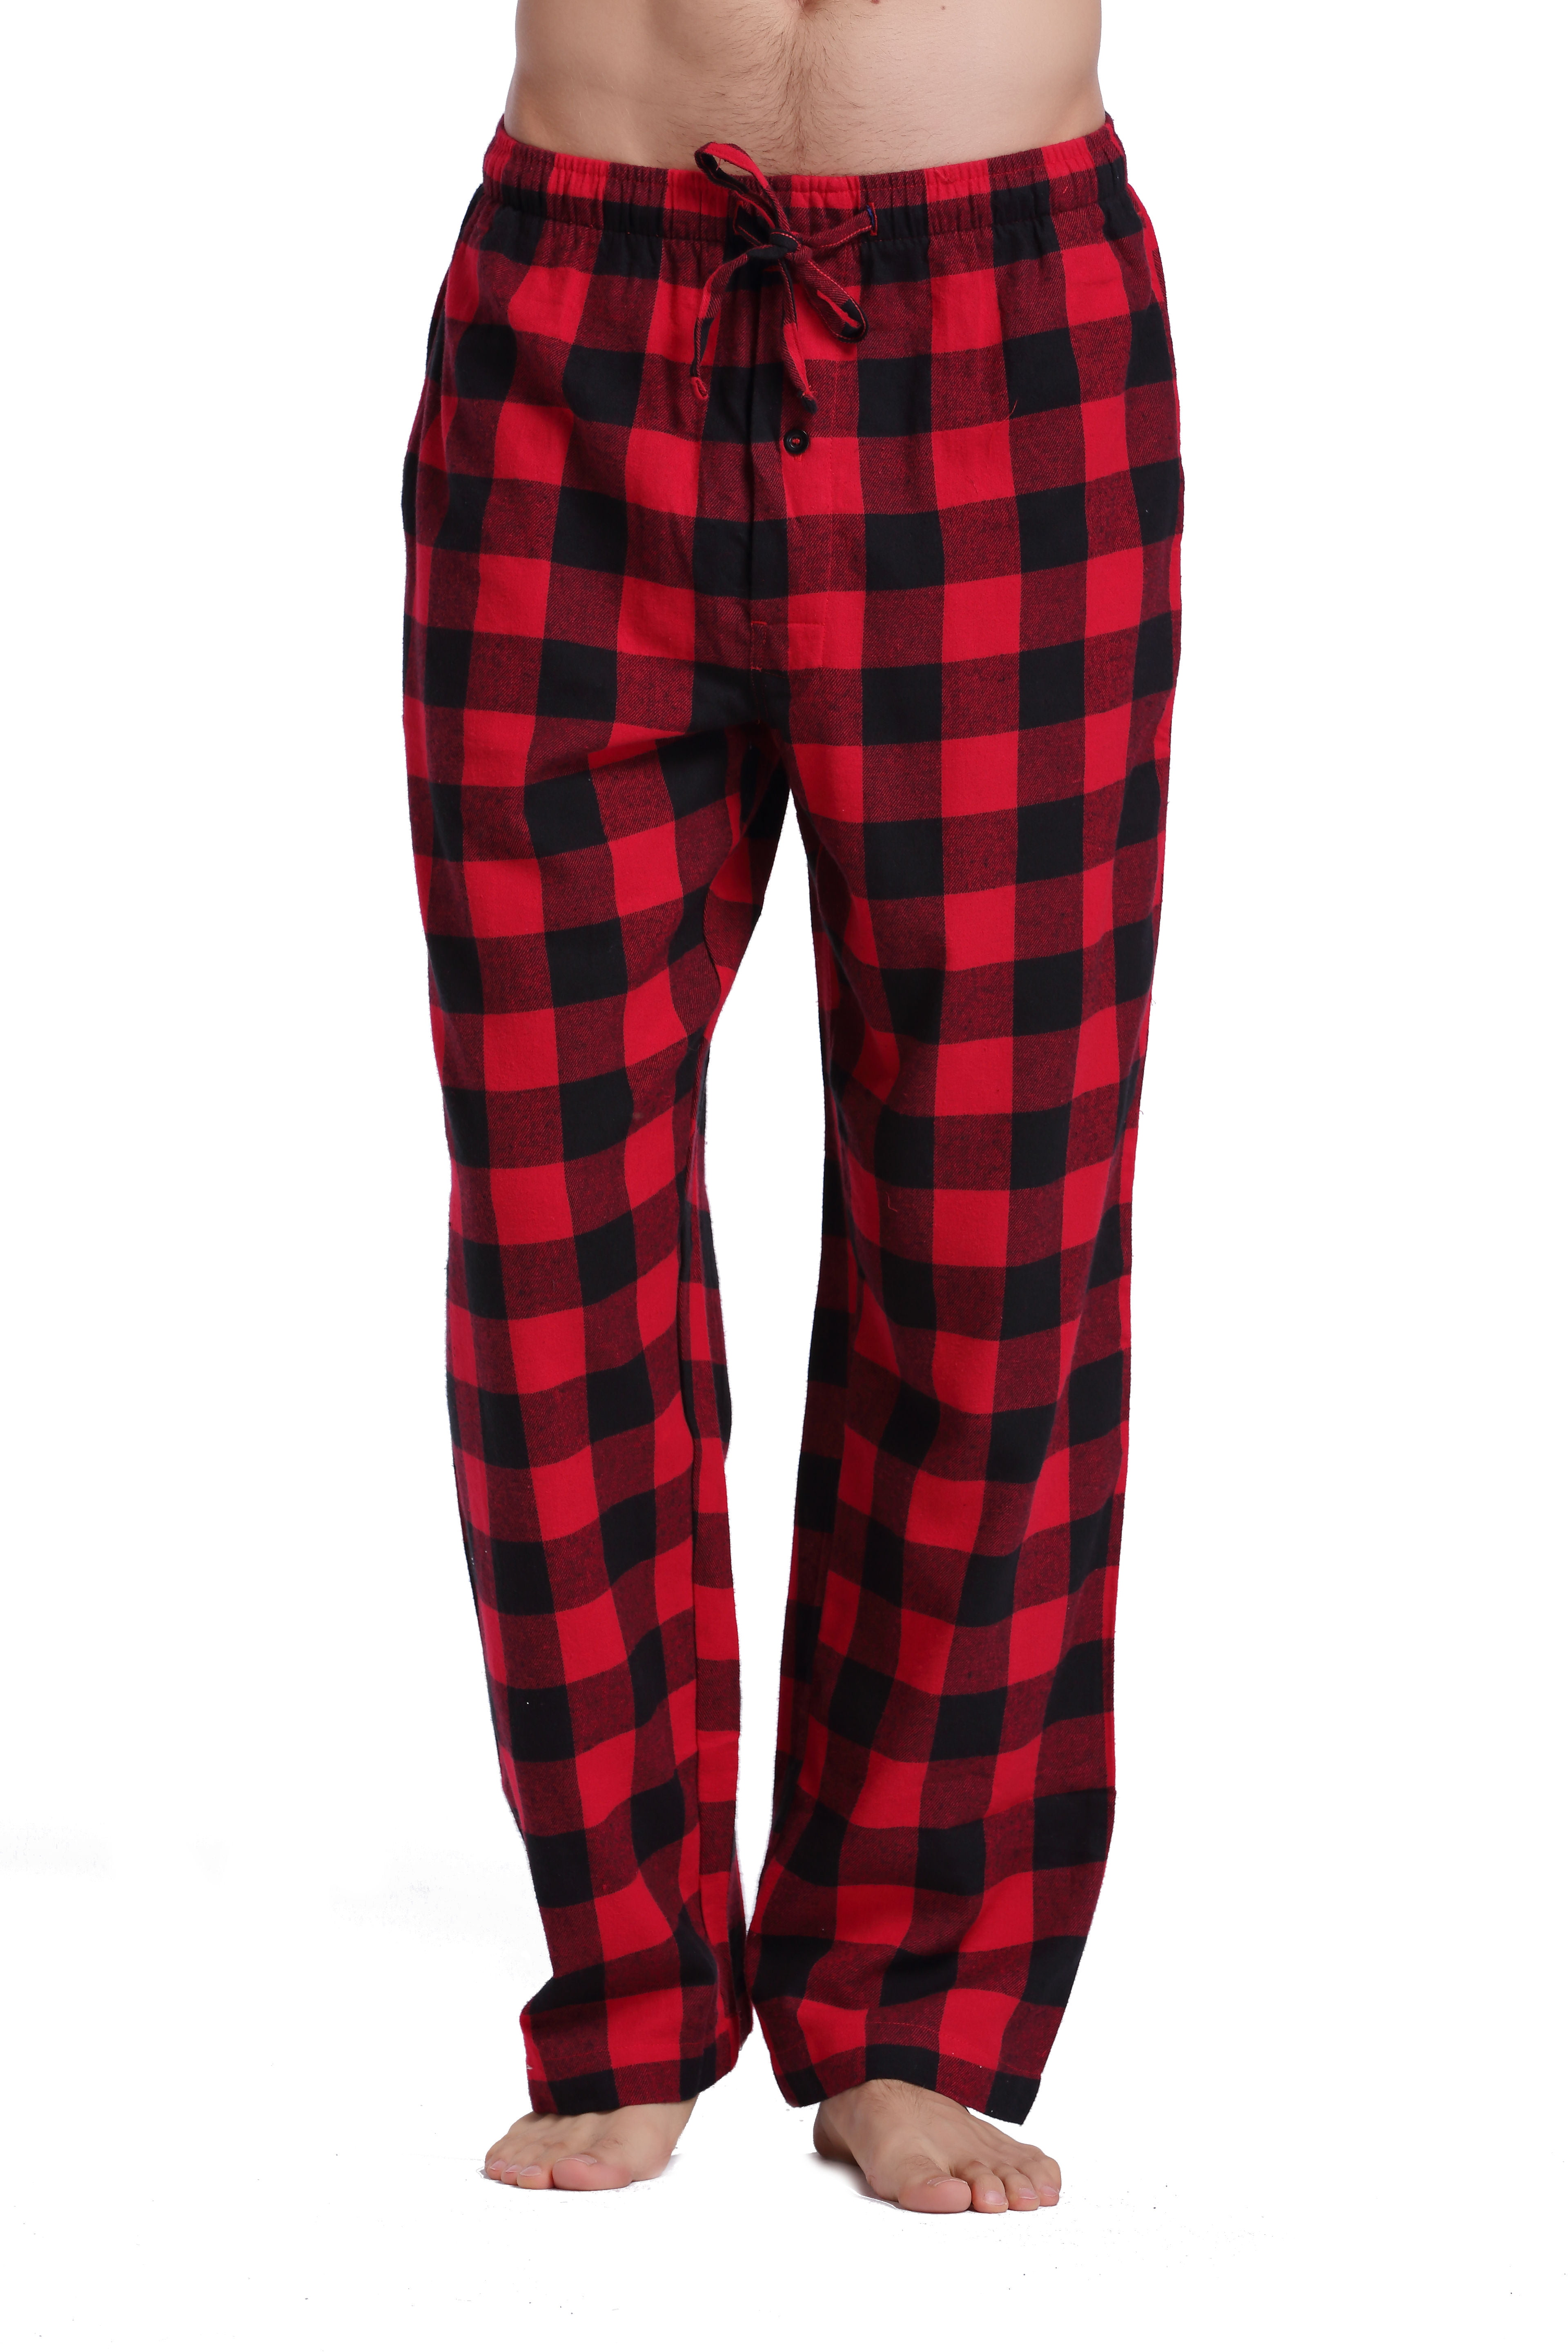 Cyz Men S 100 Cotton Super Soft Flannel Plaid Pajama Pants Blackredgingham 2xl